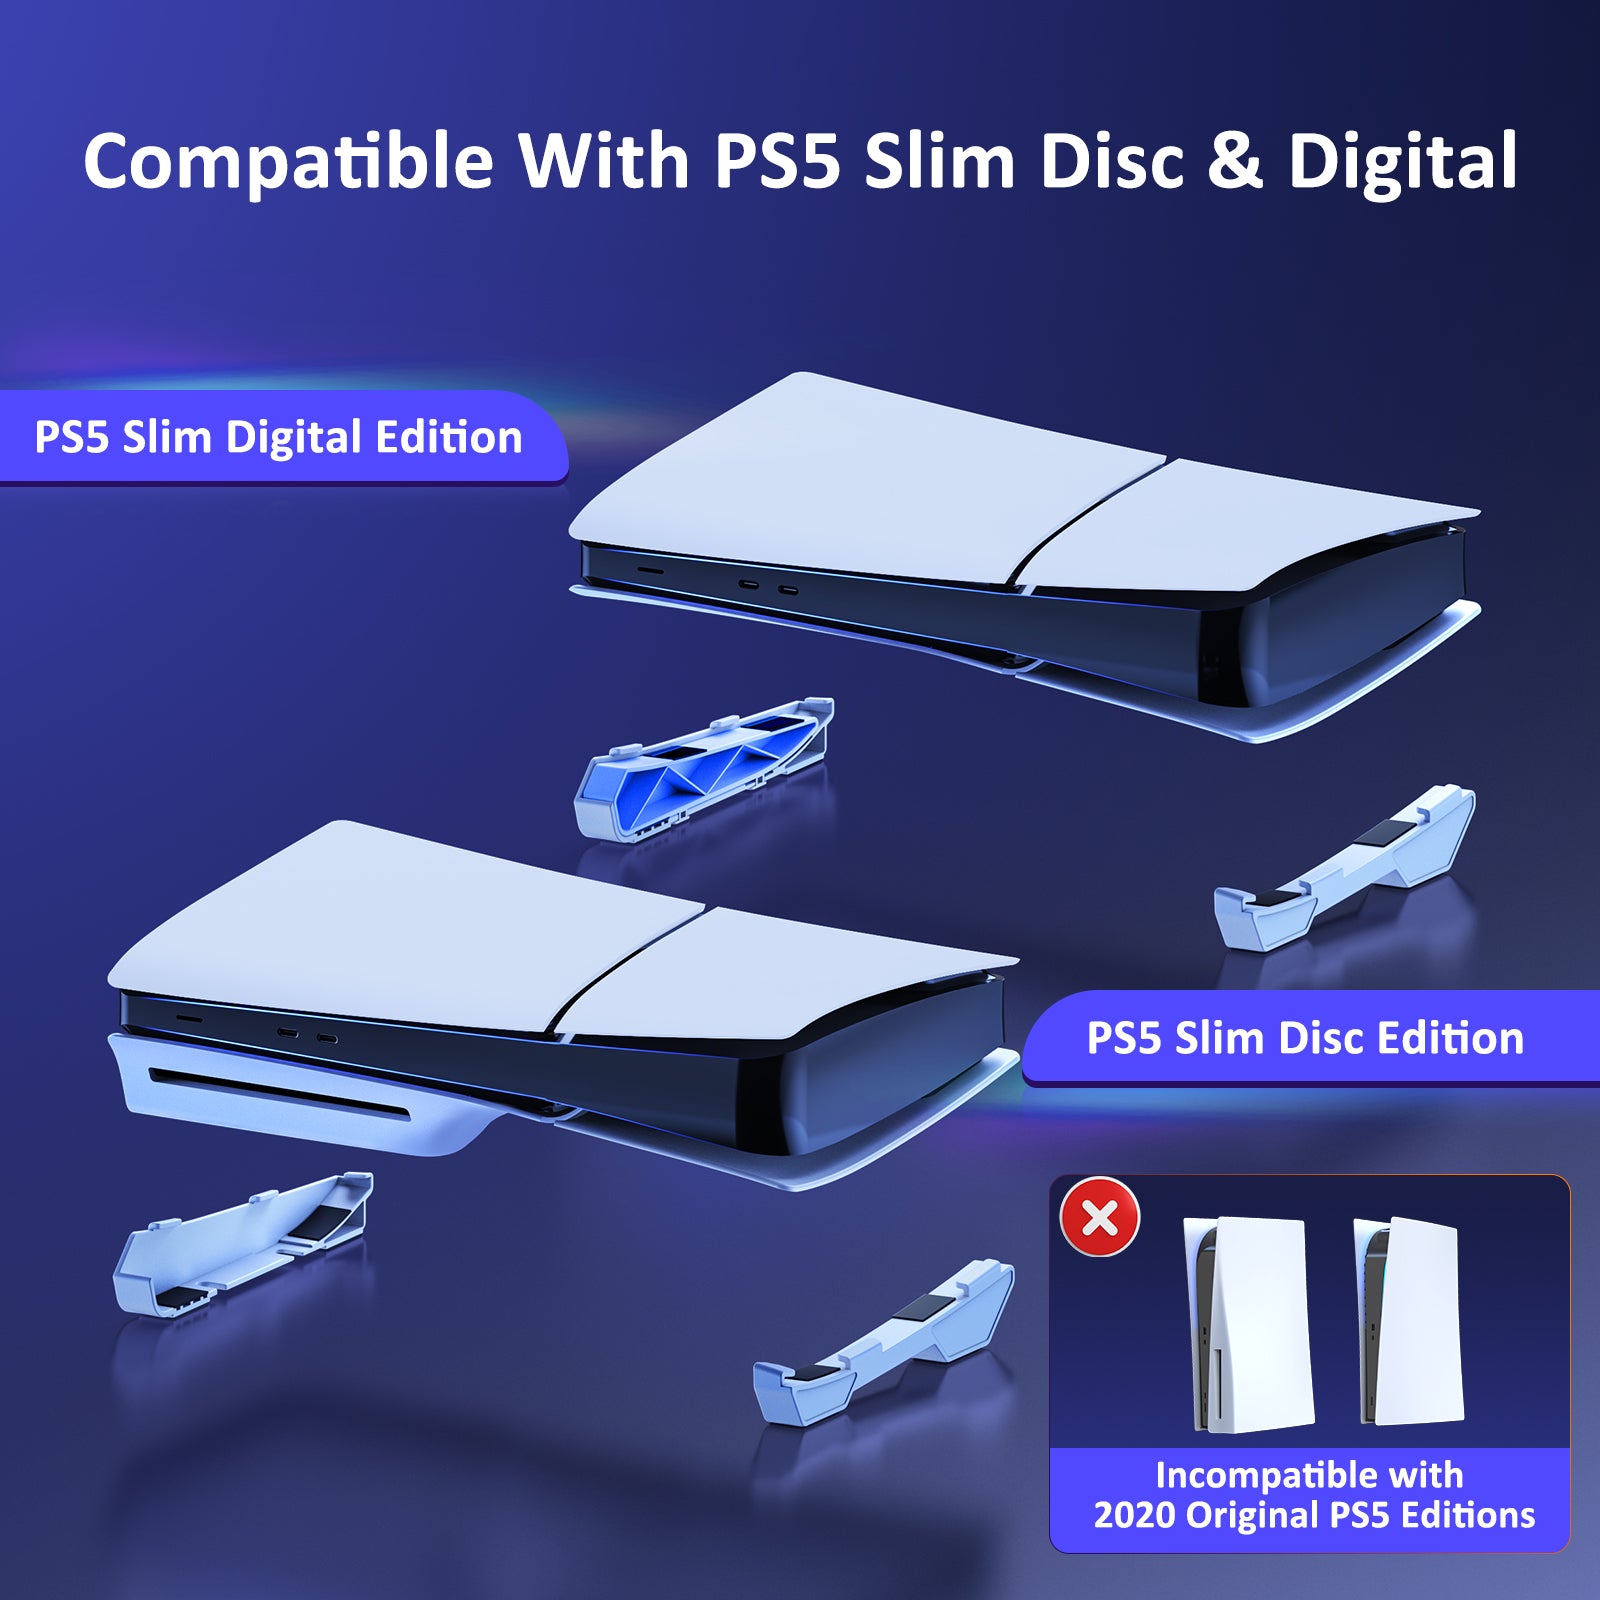 NexiGo PS5 Slim Horizontal Stand White consumerelectronics - NexiGo